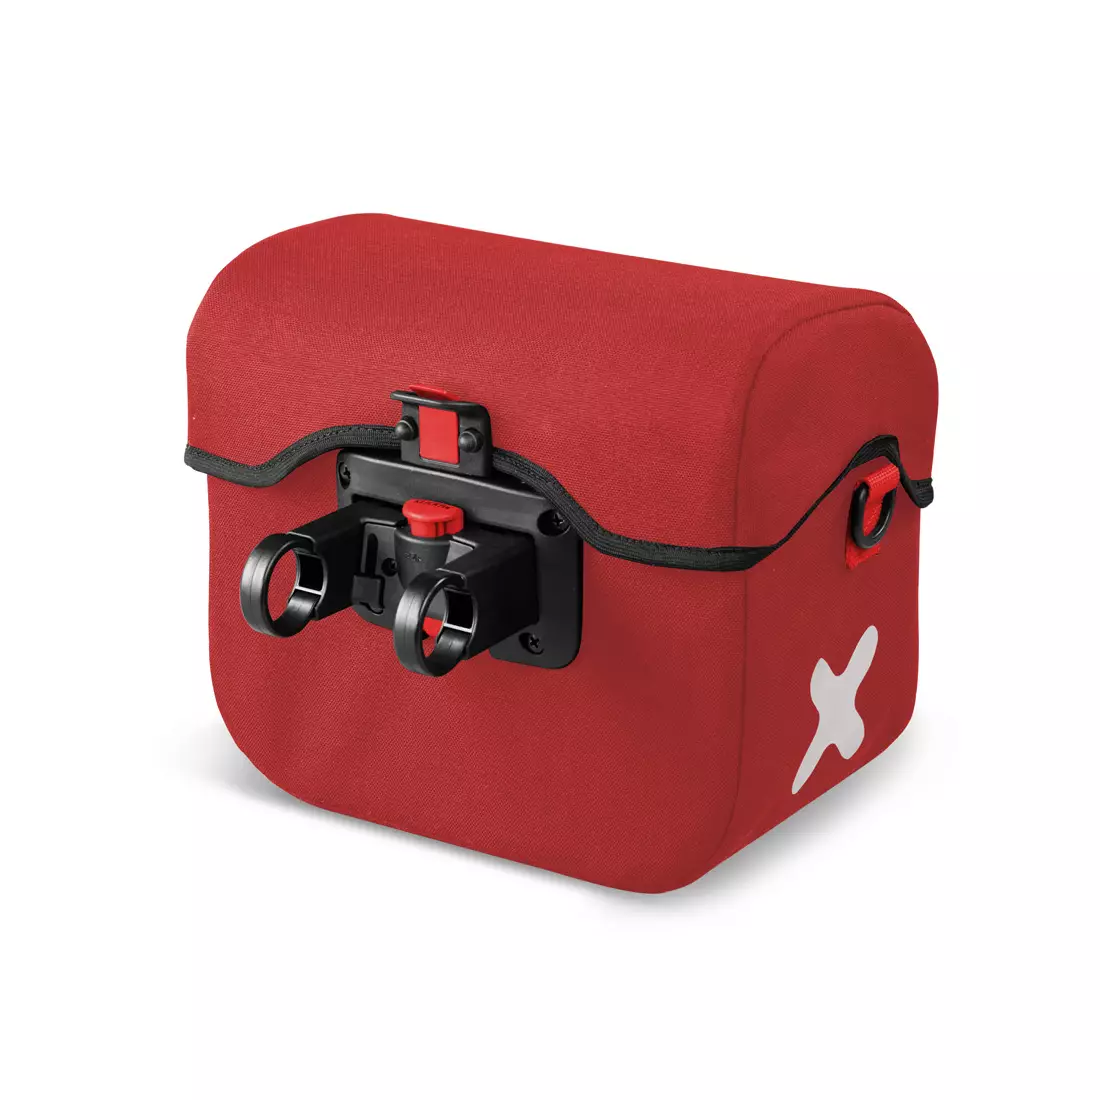 EXTRAWHEEL HANDY PREMIUM CORDURA XL torba na kierownicę rowerową, czerwona 7,5 L